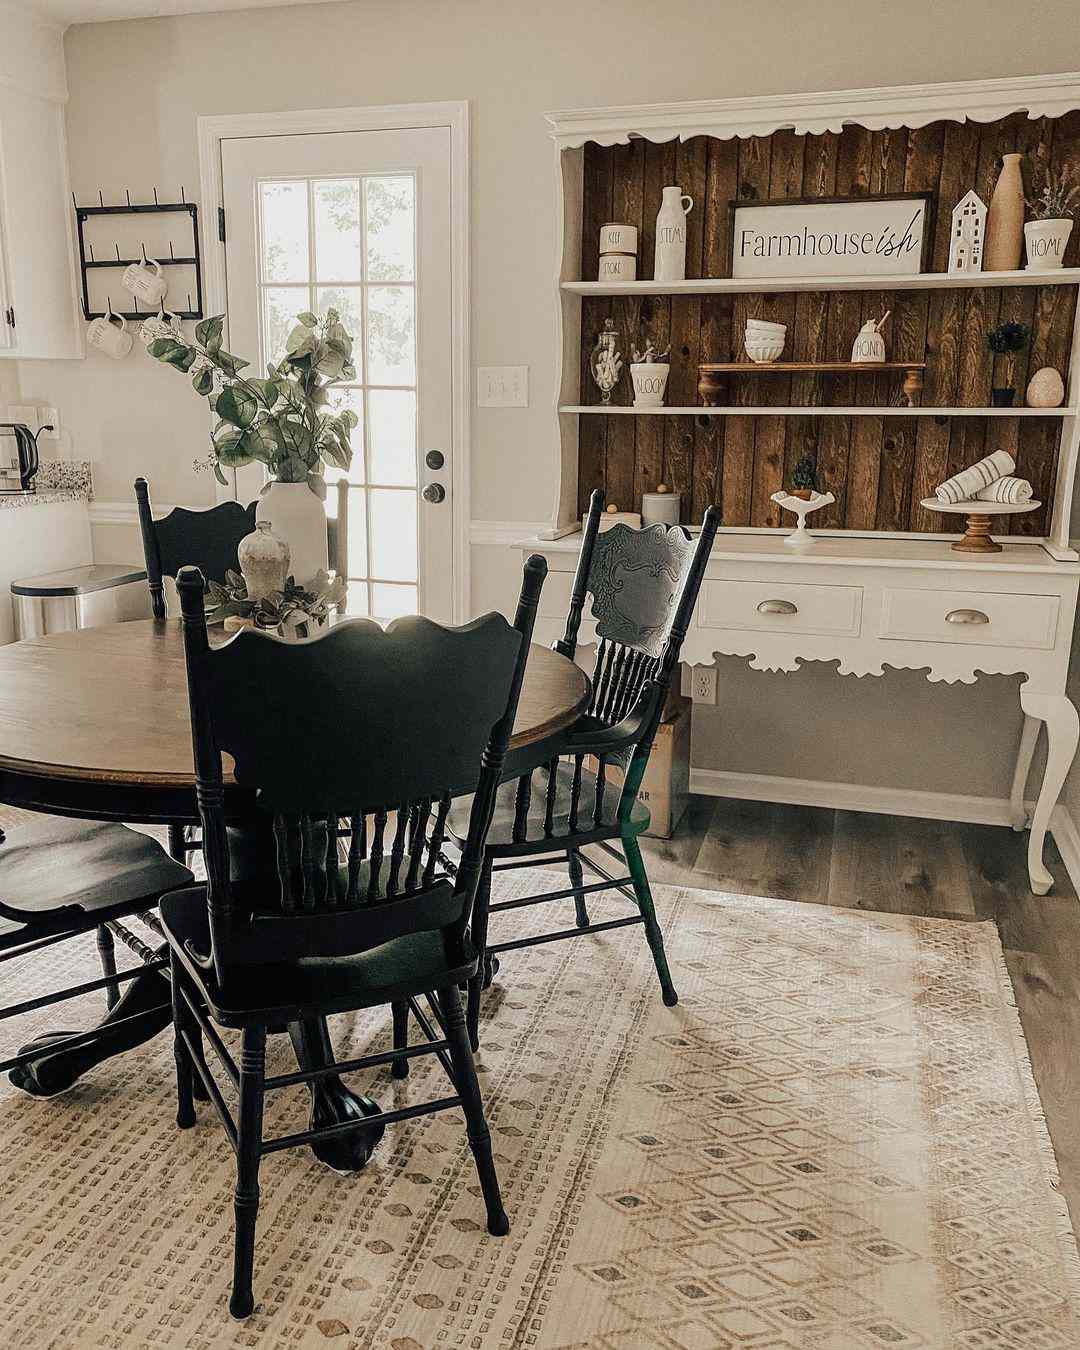 Salle à manger de style Farmhouse avec des fauteuils noirs